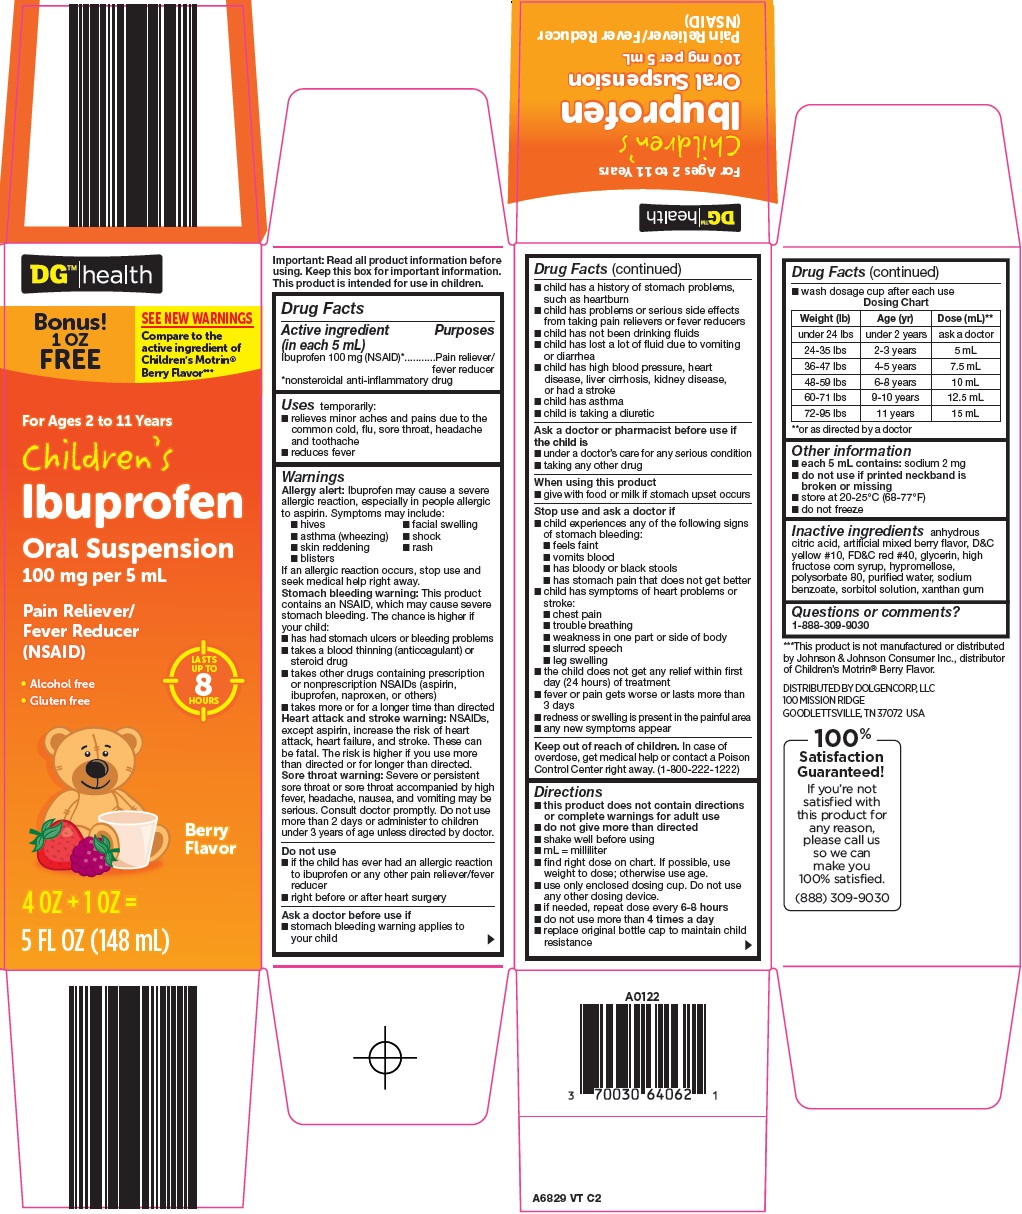 897-vt-ibuprofen.jpg